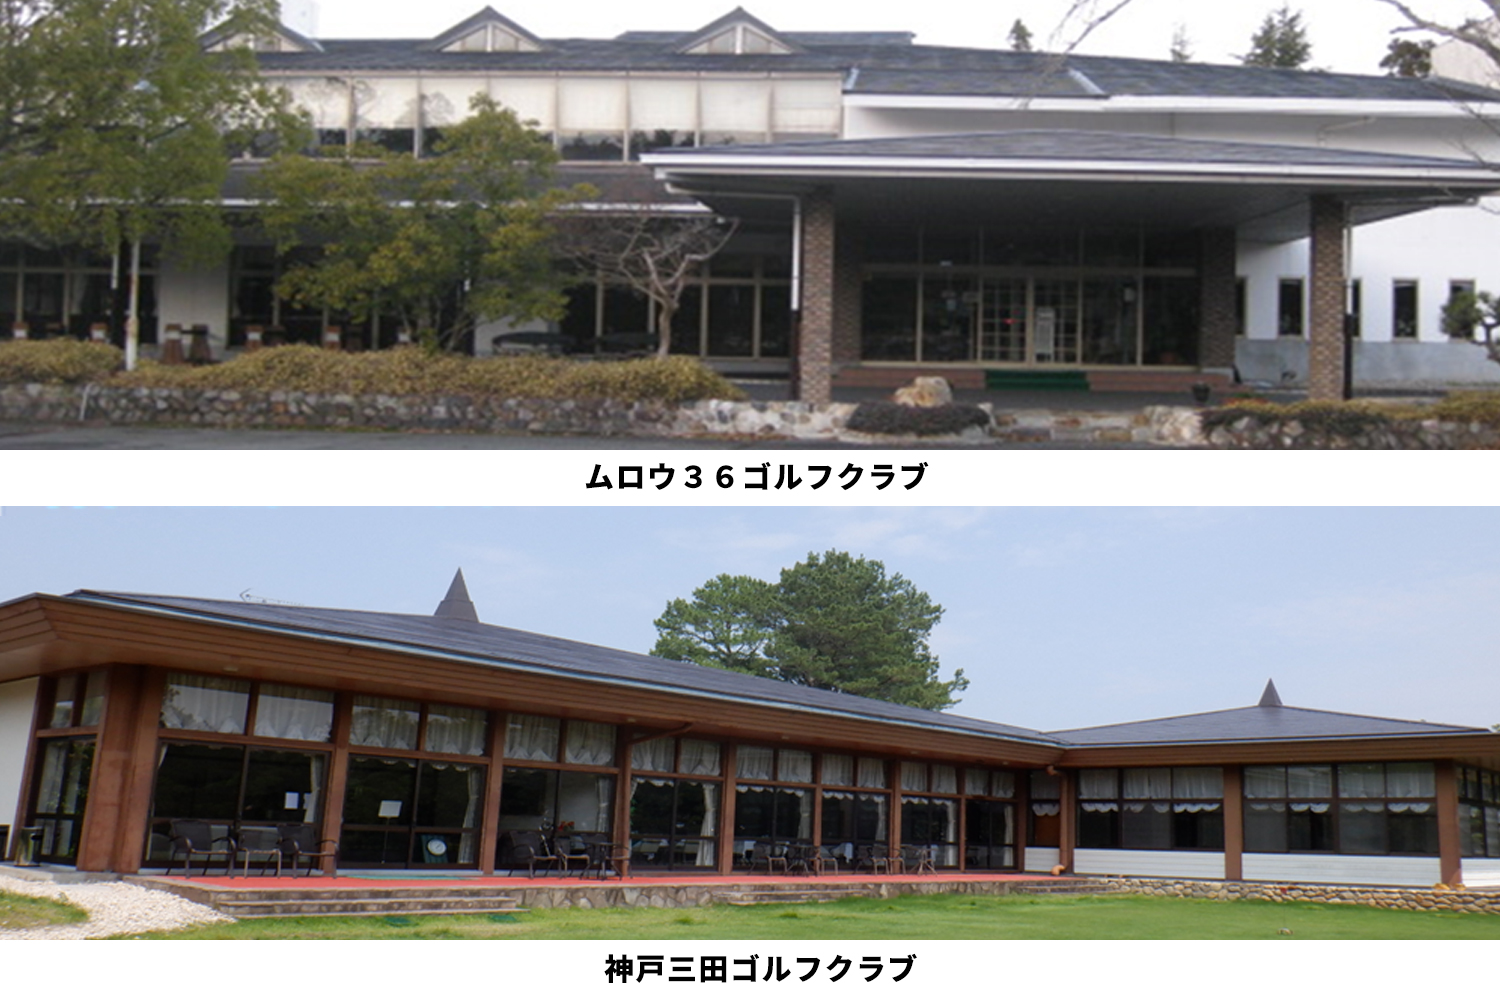 ムロウ36ゴルフクラブ、神戸三田ゴルフクラブ等大屋根改修工事